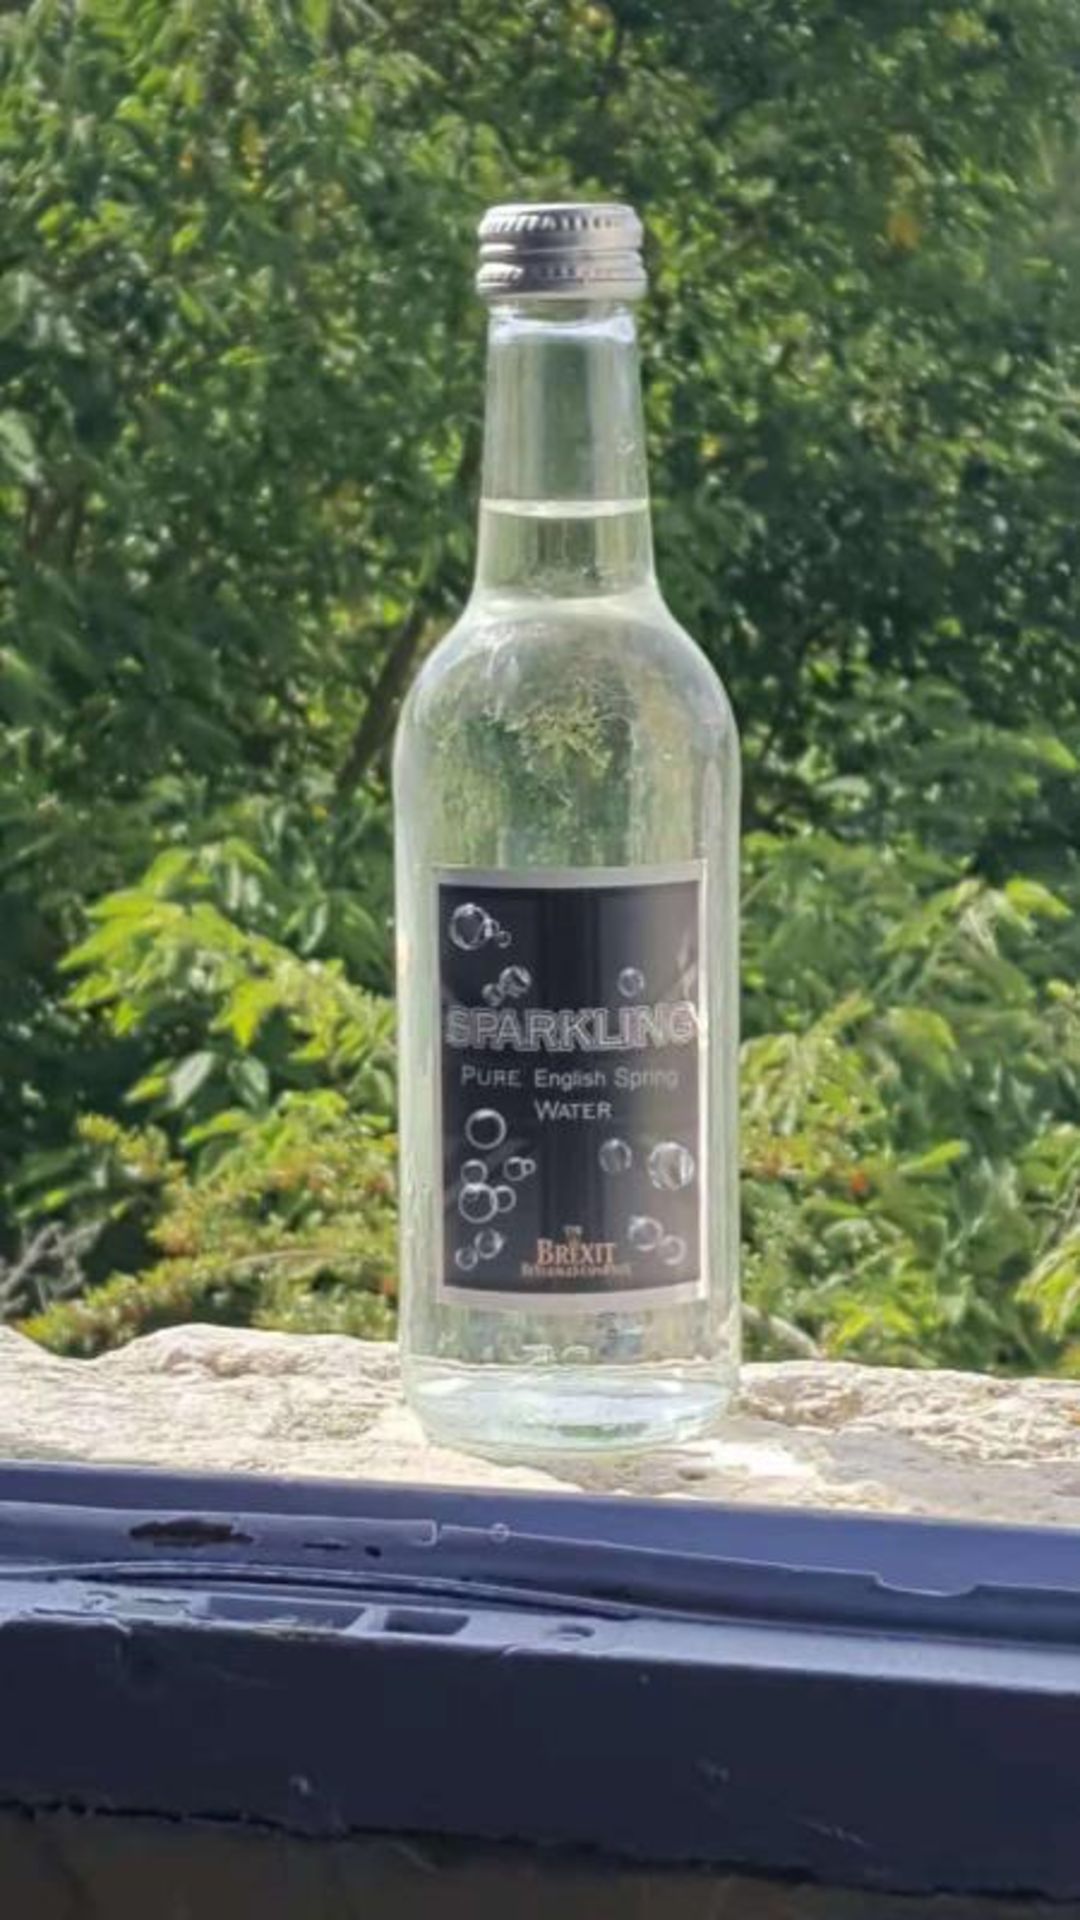 Brexit Beverages Celebration Glass Bottled Sparkling Water1 Pallet = 40Cases - Image 3 of 5